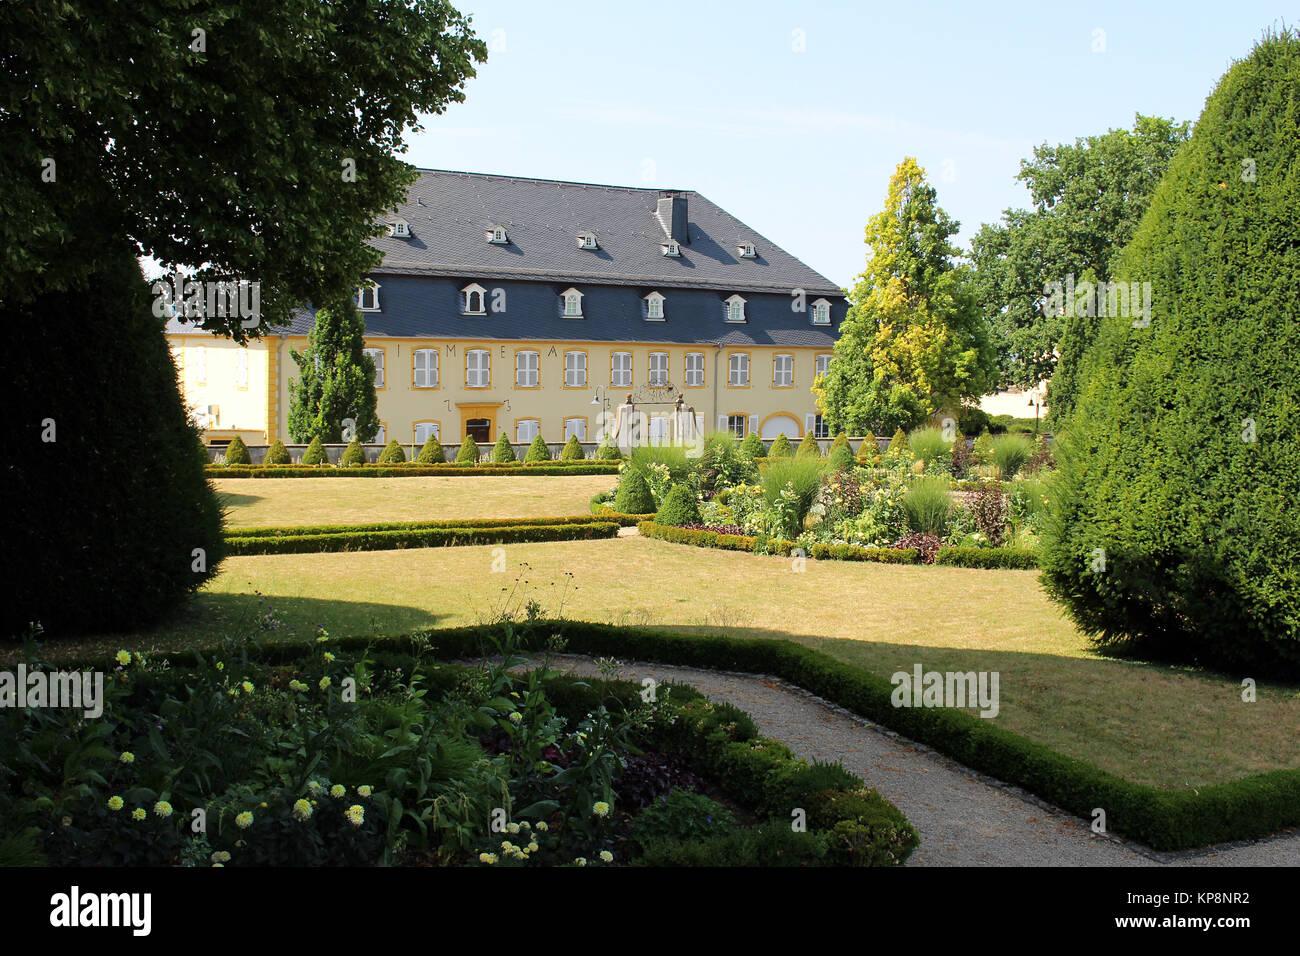 Maison dans le jardin baroque de Perl en été - Sarre, Allemagne Banque D'Images